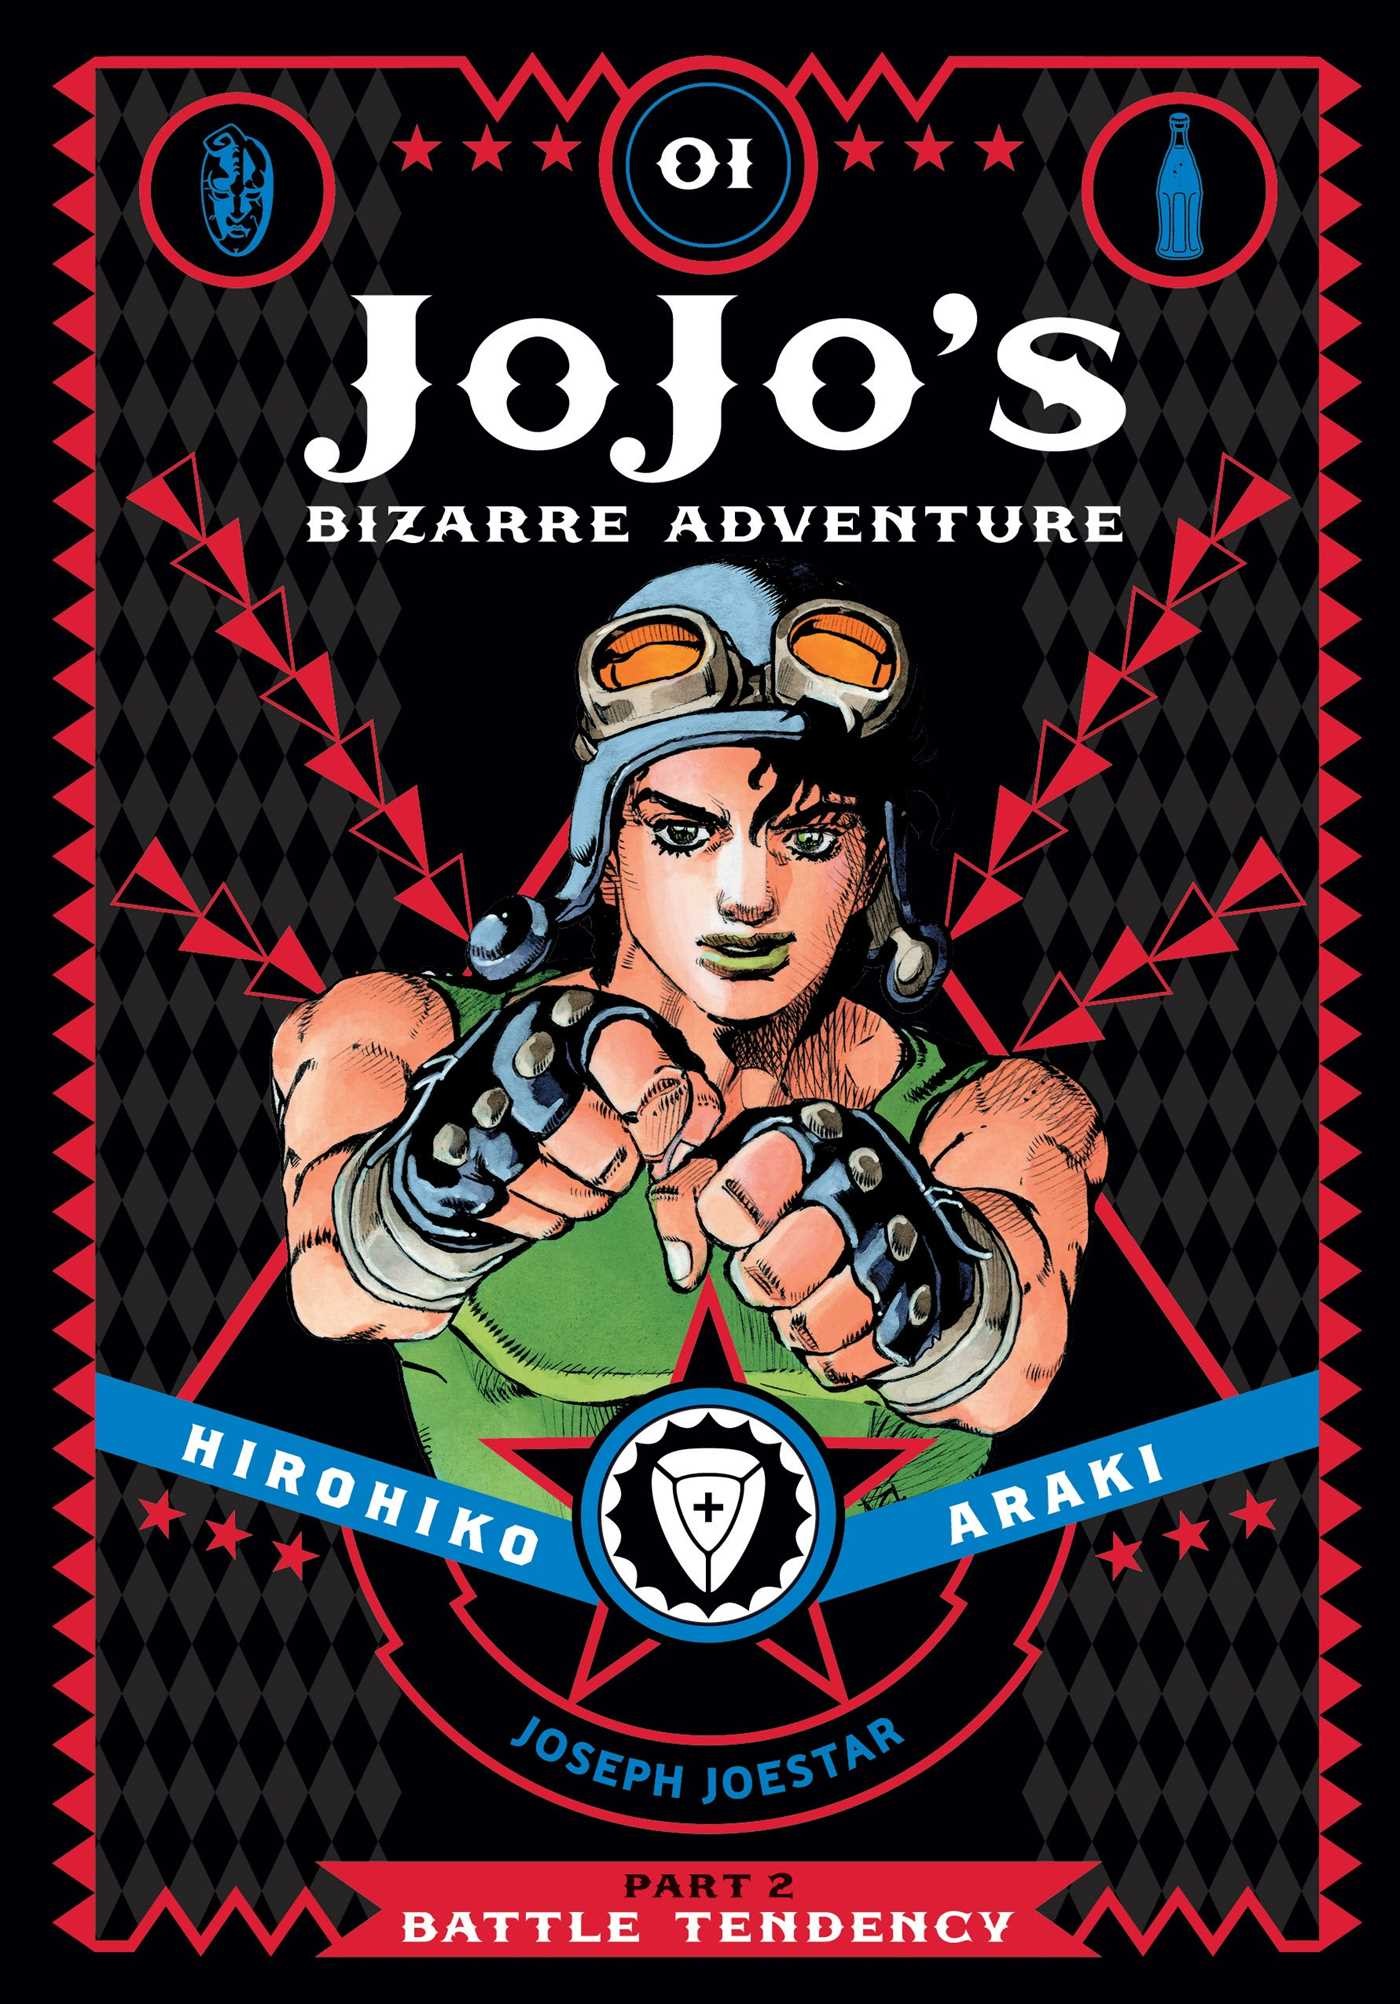 JoJo's Bizarre Adventure: Part 2-1 Battle Tendency